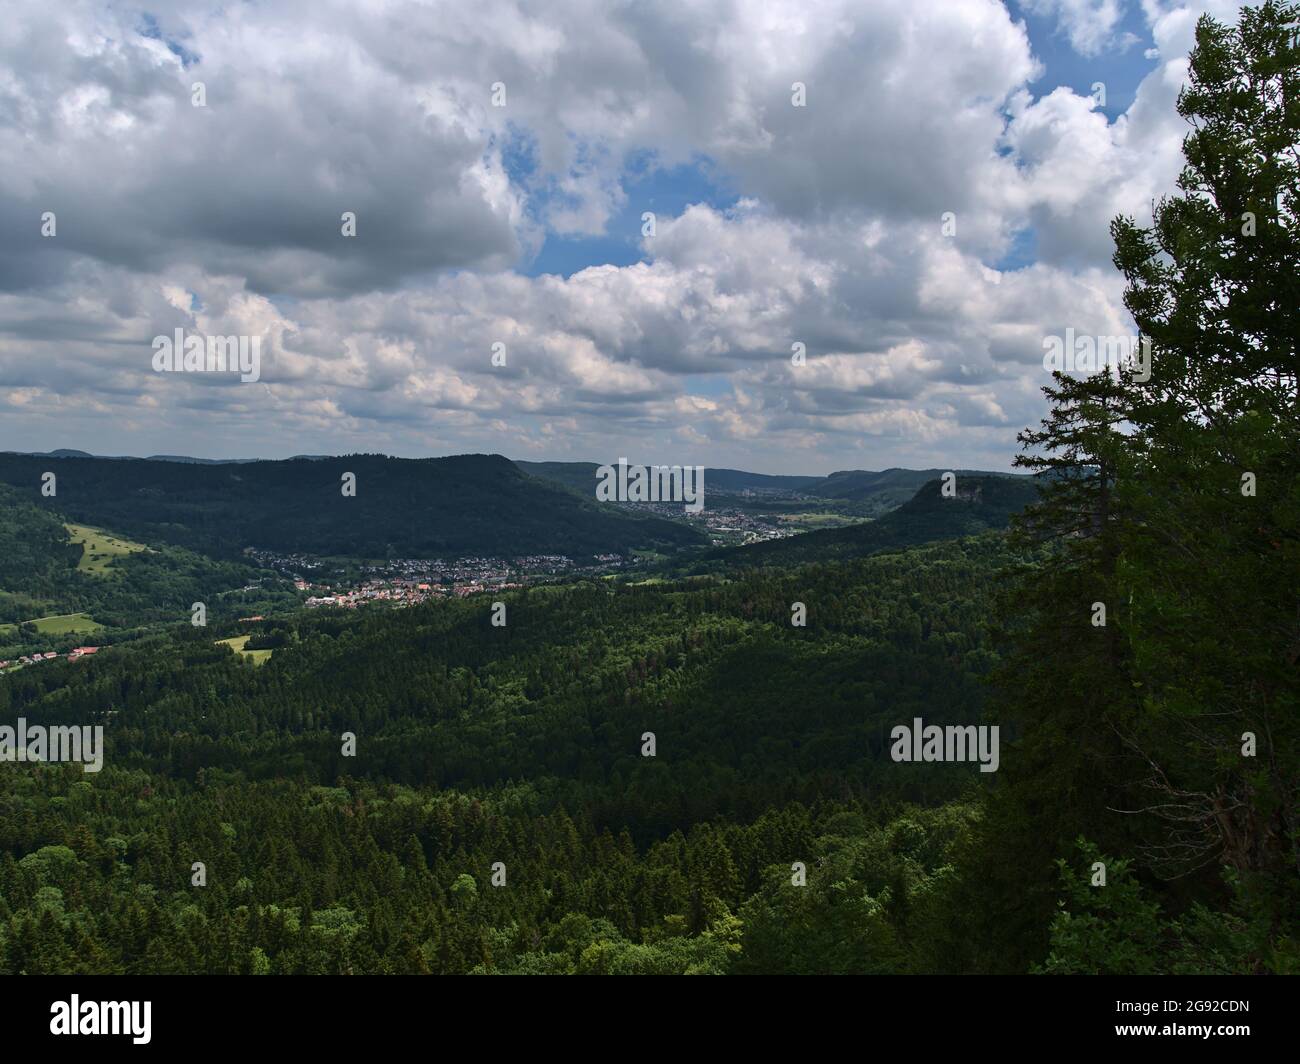 Blick auf die Ausläufer der Schwäbischen Alb mit grünen Wäldern und die Dörfer Laufen und Lautlingen, beide Teil der Stadt Albstadt. Stockfoto